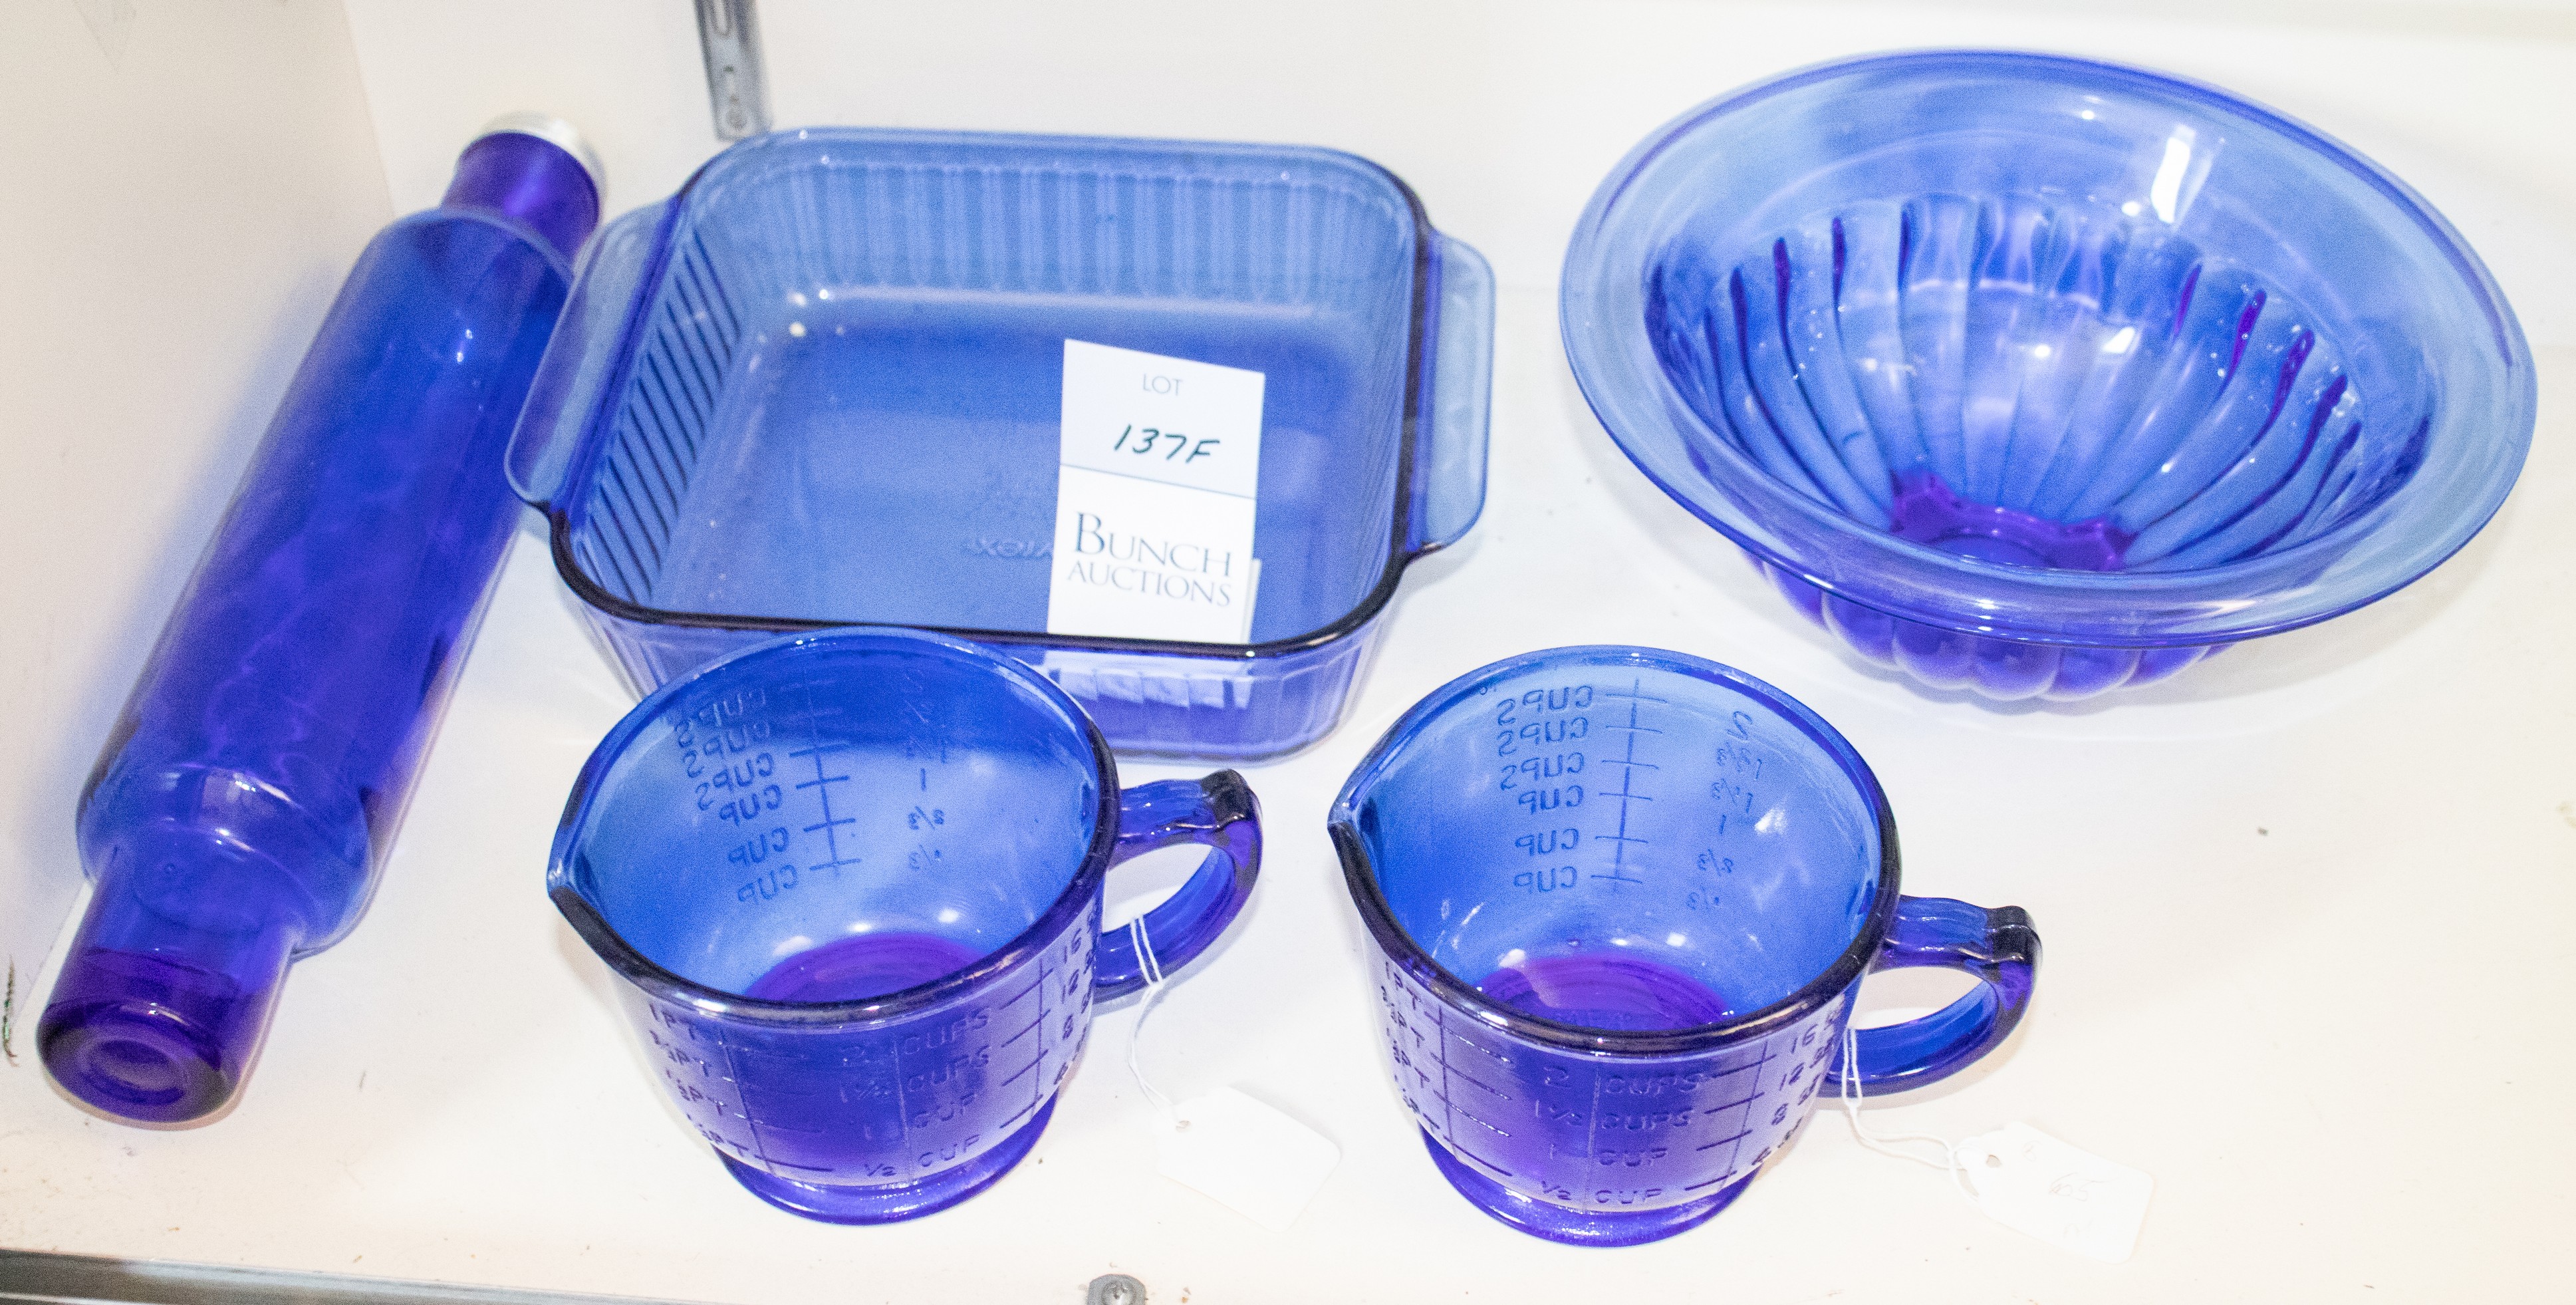  5 Cobalt blue glass kitchen items  27a7c3